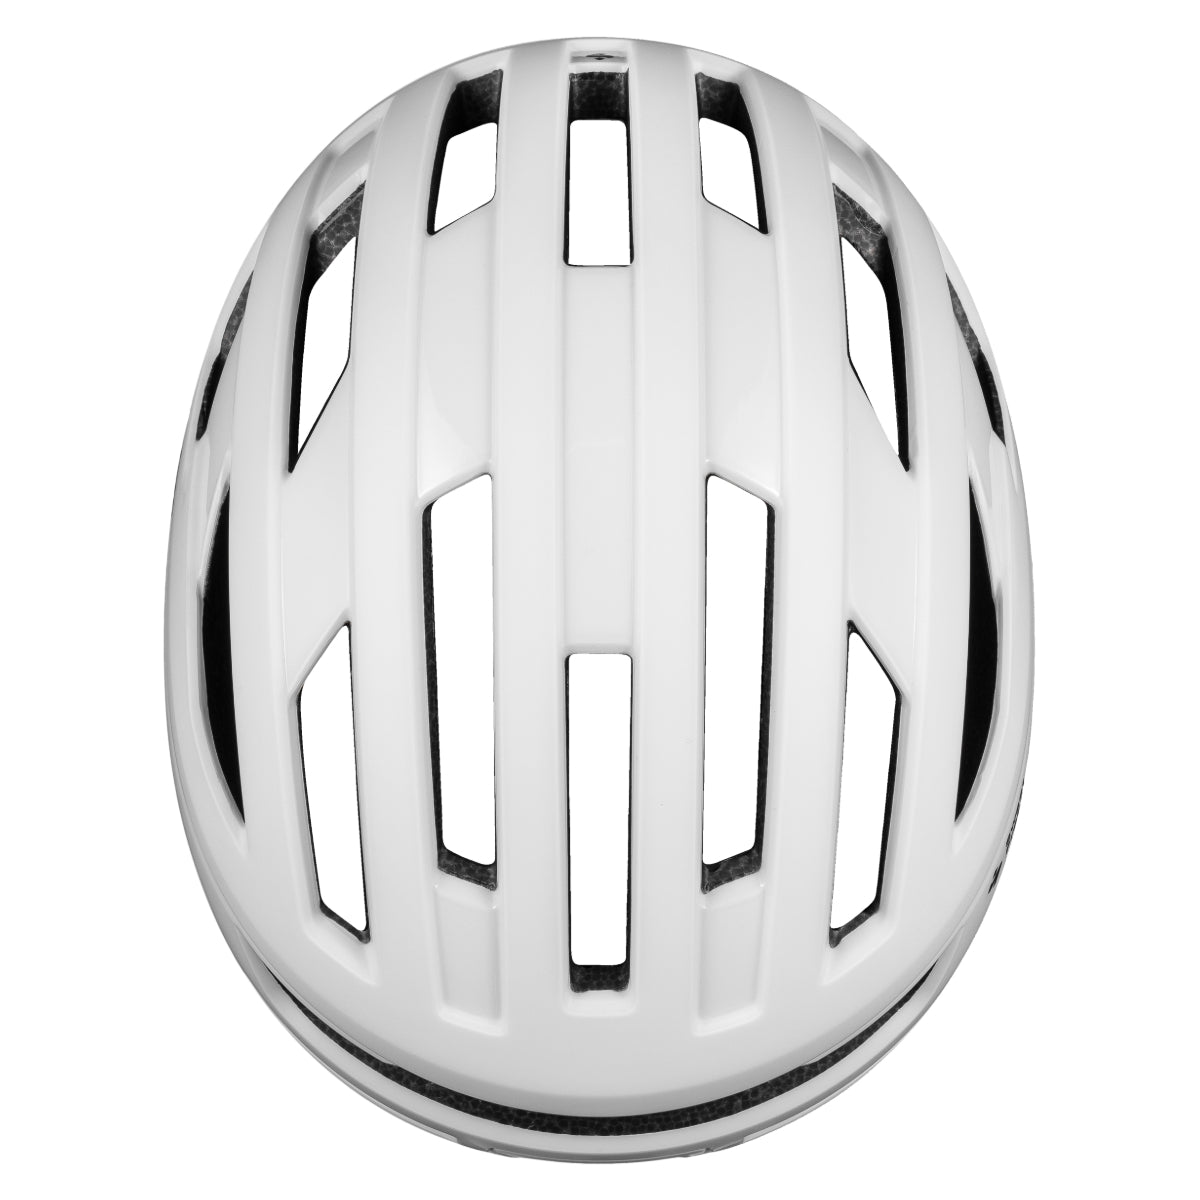 Sweet Protection - Fluxer Mips Helmet - Satin White